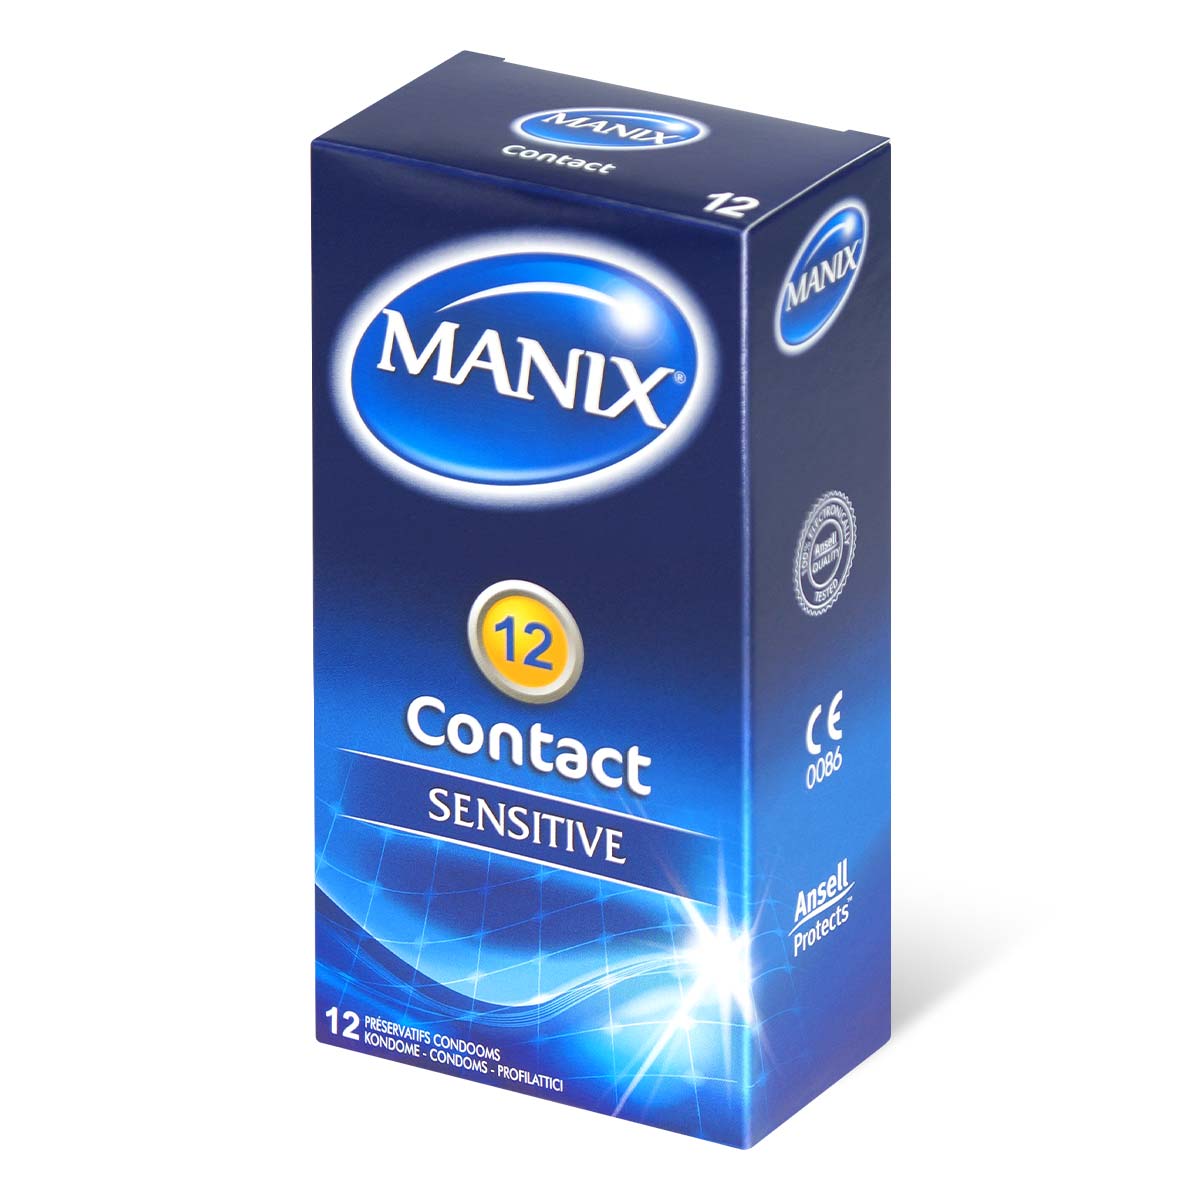 Manix 細膩觸感裝 12 片裝 乳膠安全套-p_1